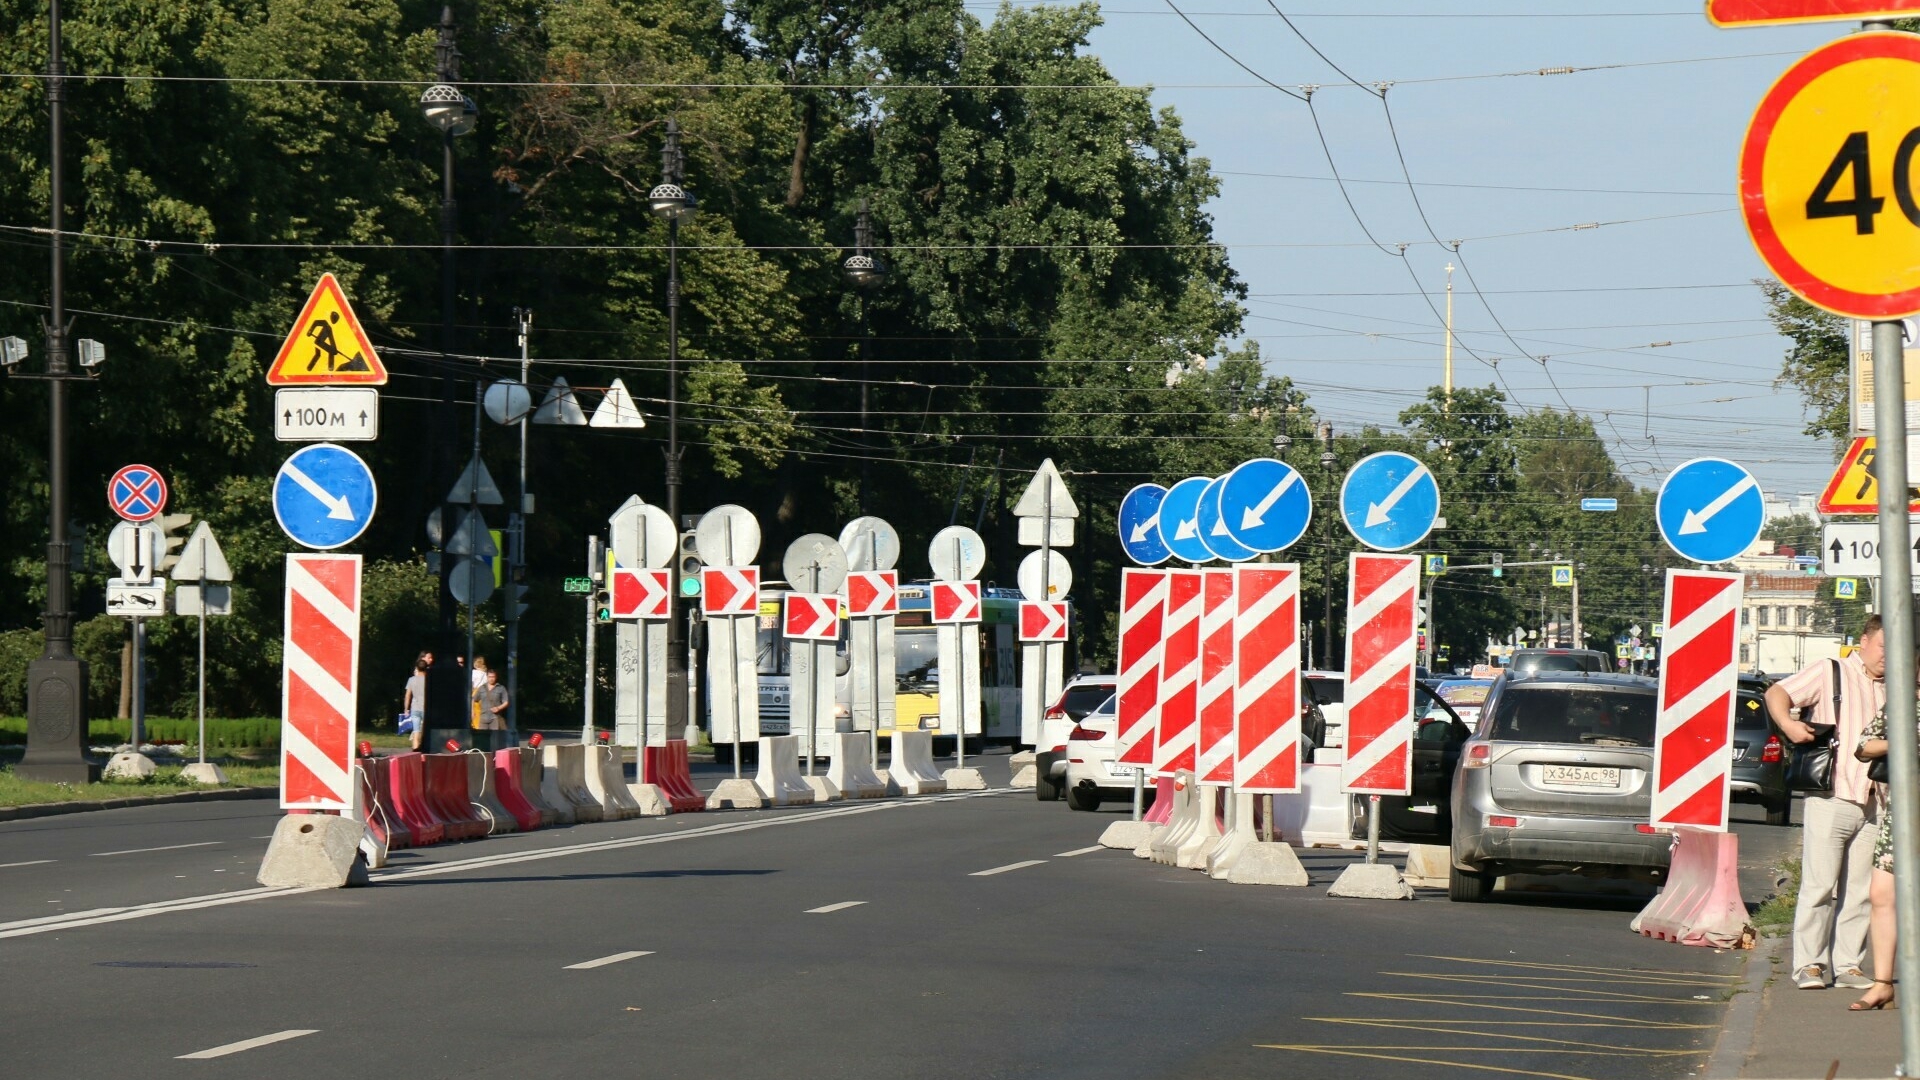 Ленобласть восстановит дороги и школы в донецком Енакиево